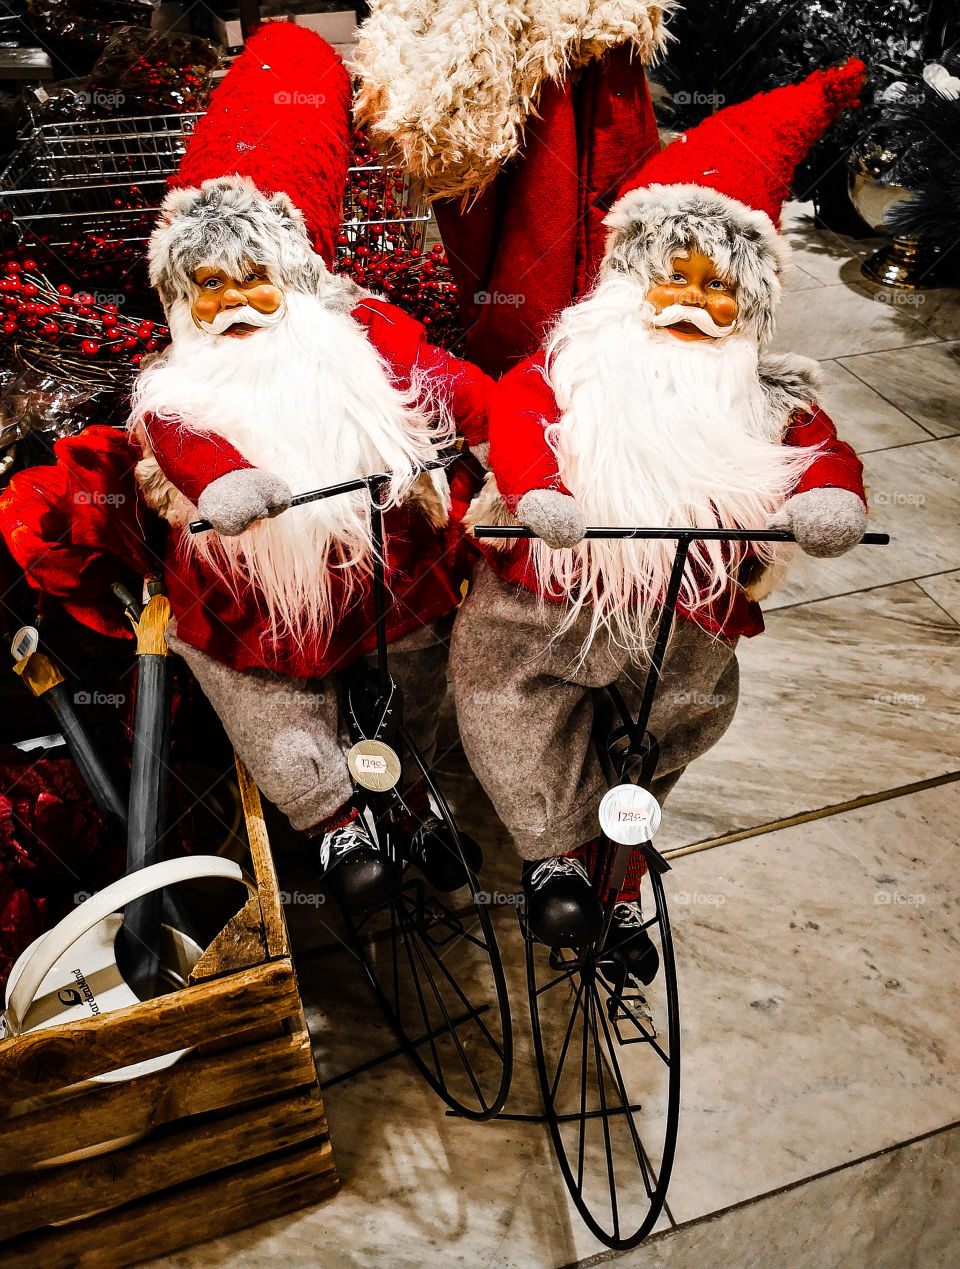 Santas on bicycles.